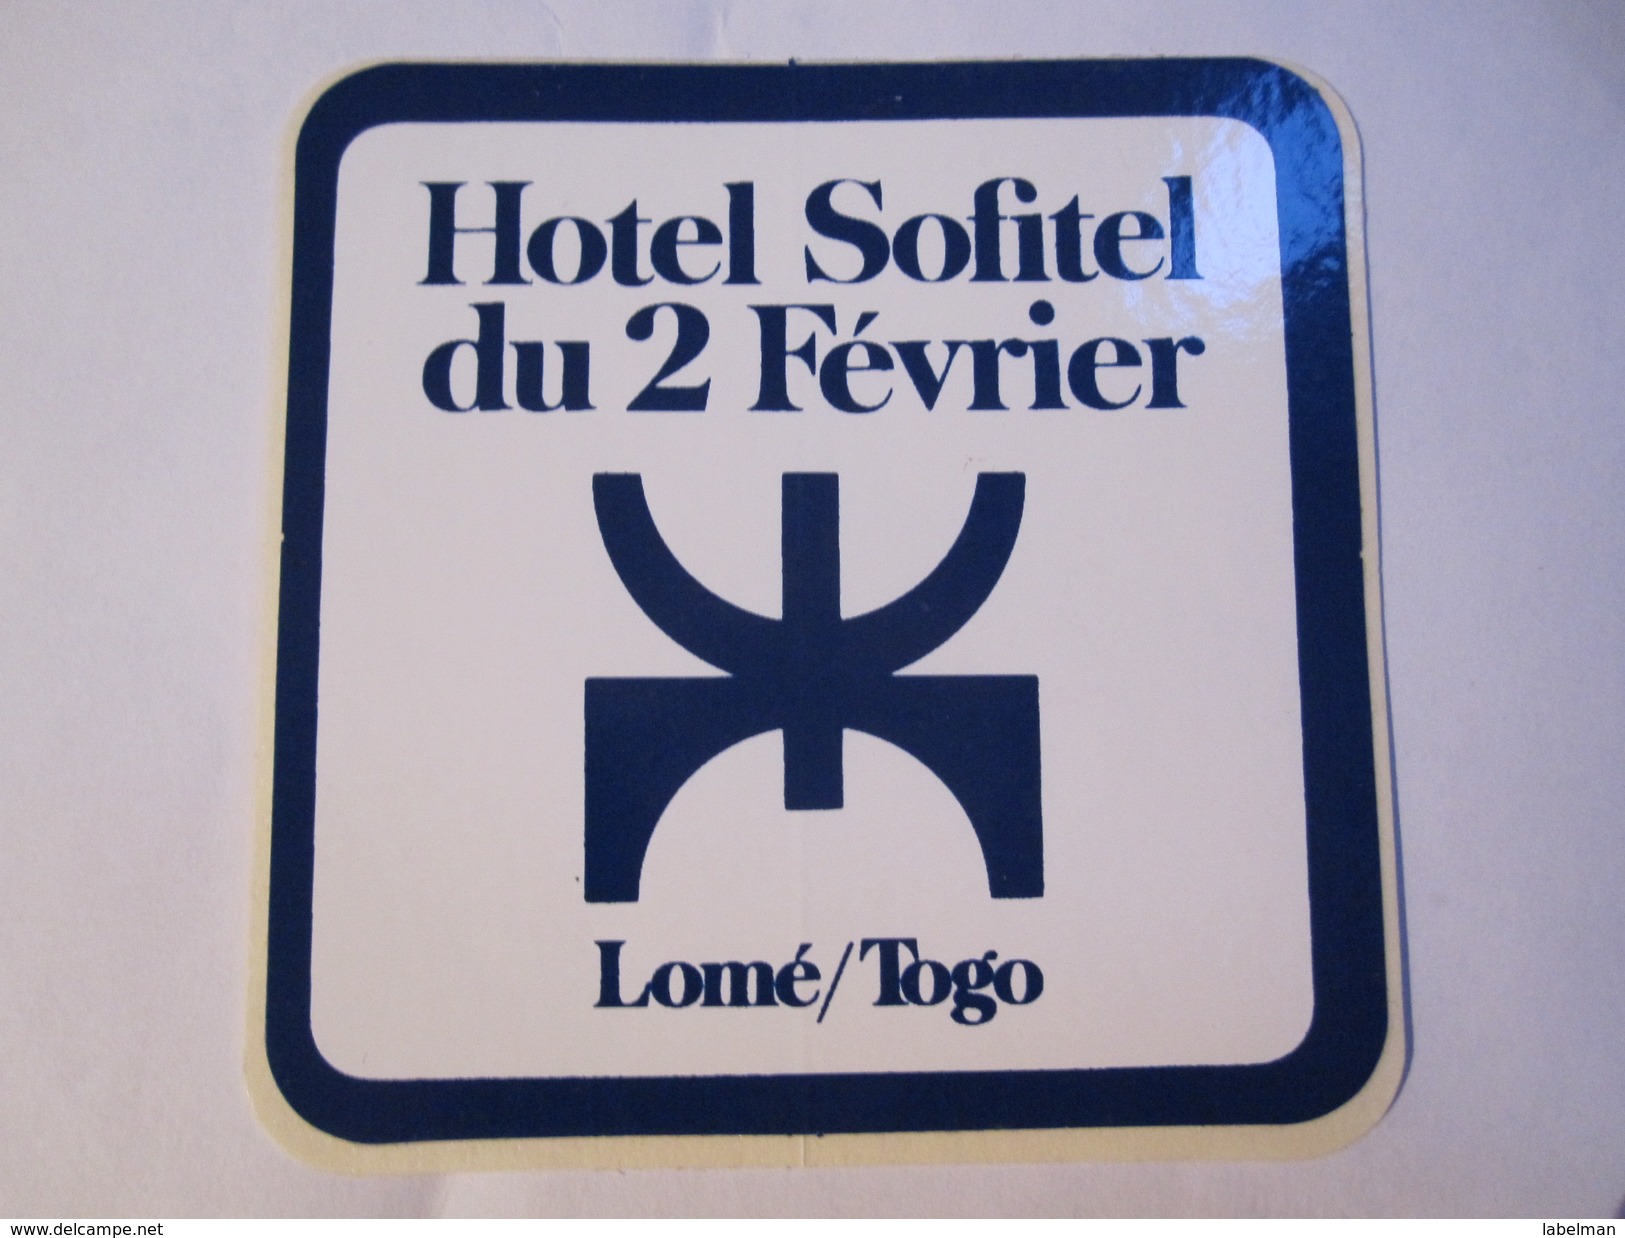 HOTEL MOTEL PENSION SOFITEL DU 2 FEVRIER LOME TOGO OLD TAG STICKER DECAL LUGGAGE LABEL ETIQUETTE AUFKLEBER - Etiketten Van Hotels